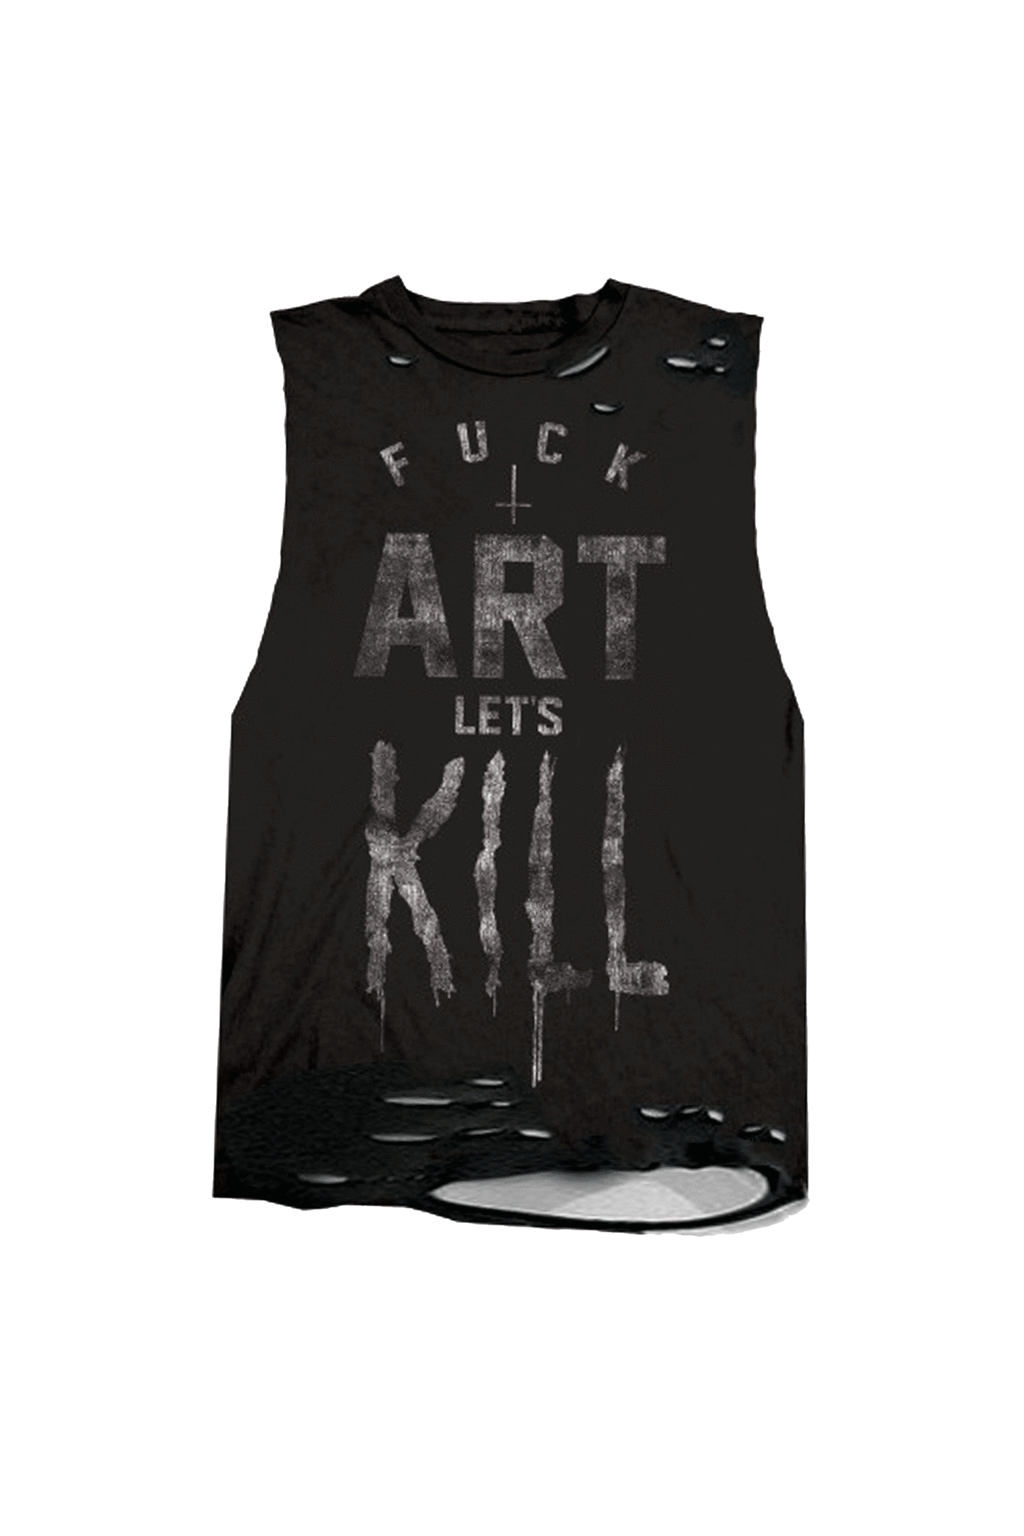 Fuck Art Let's Kill Destroyed Sleeveless